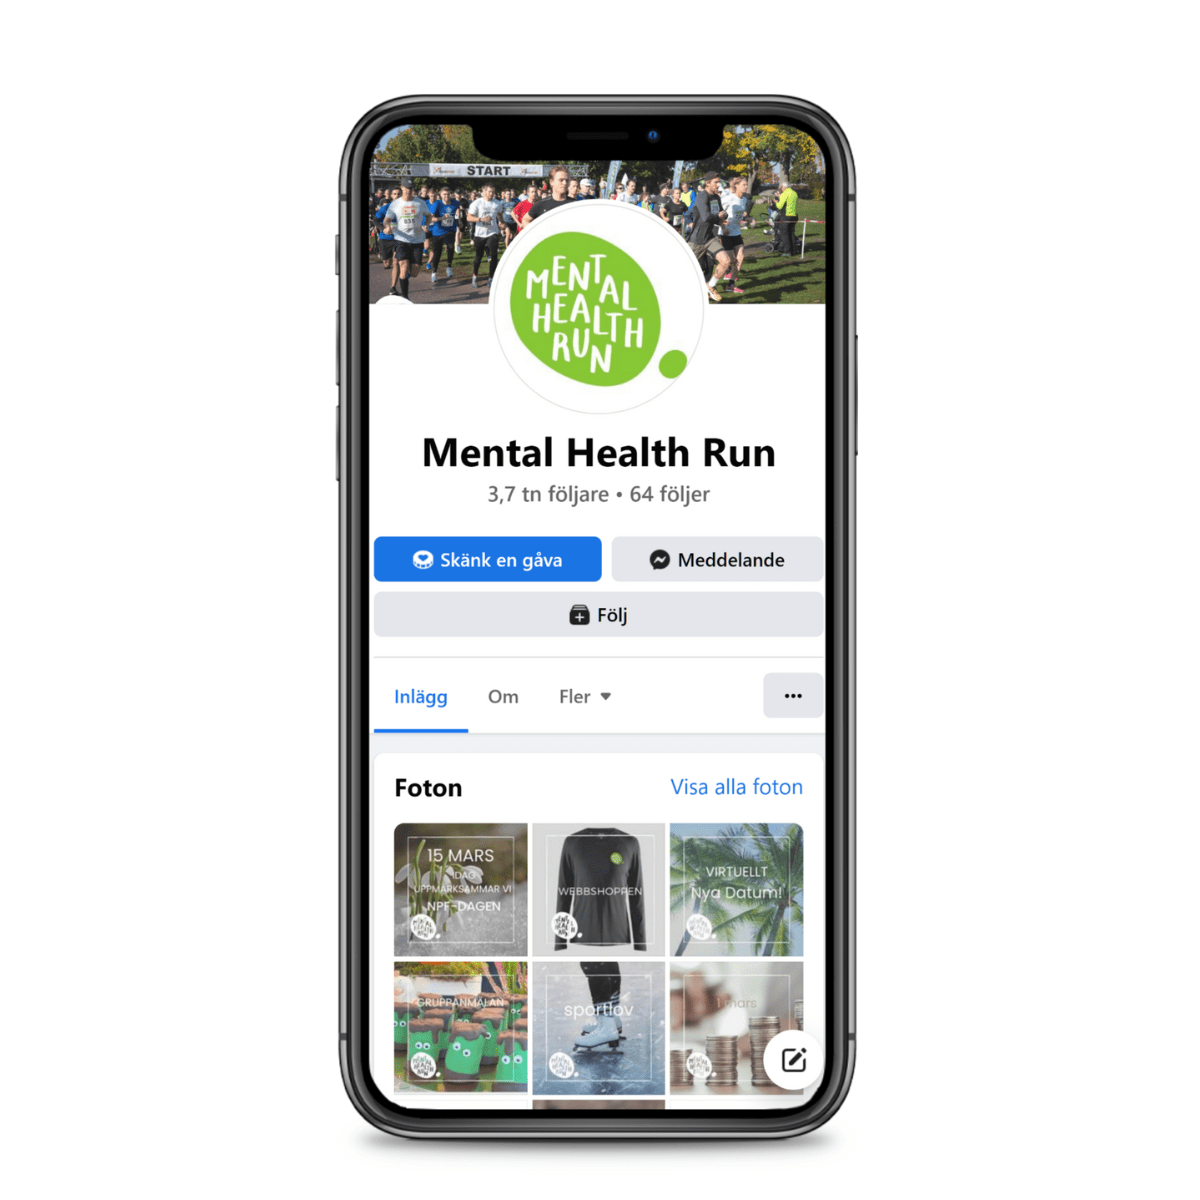 mental health run på facebook